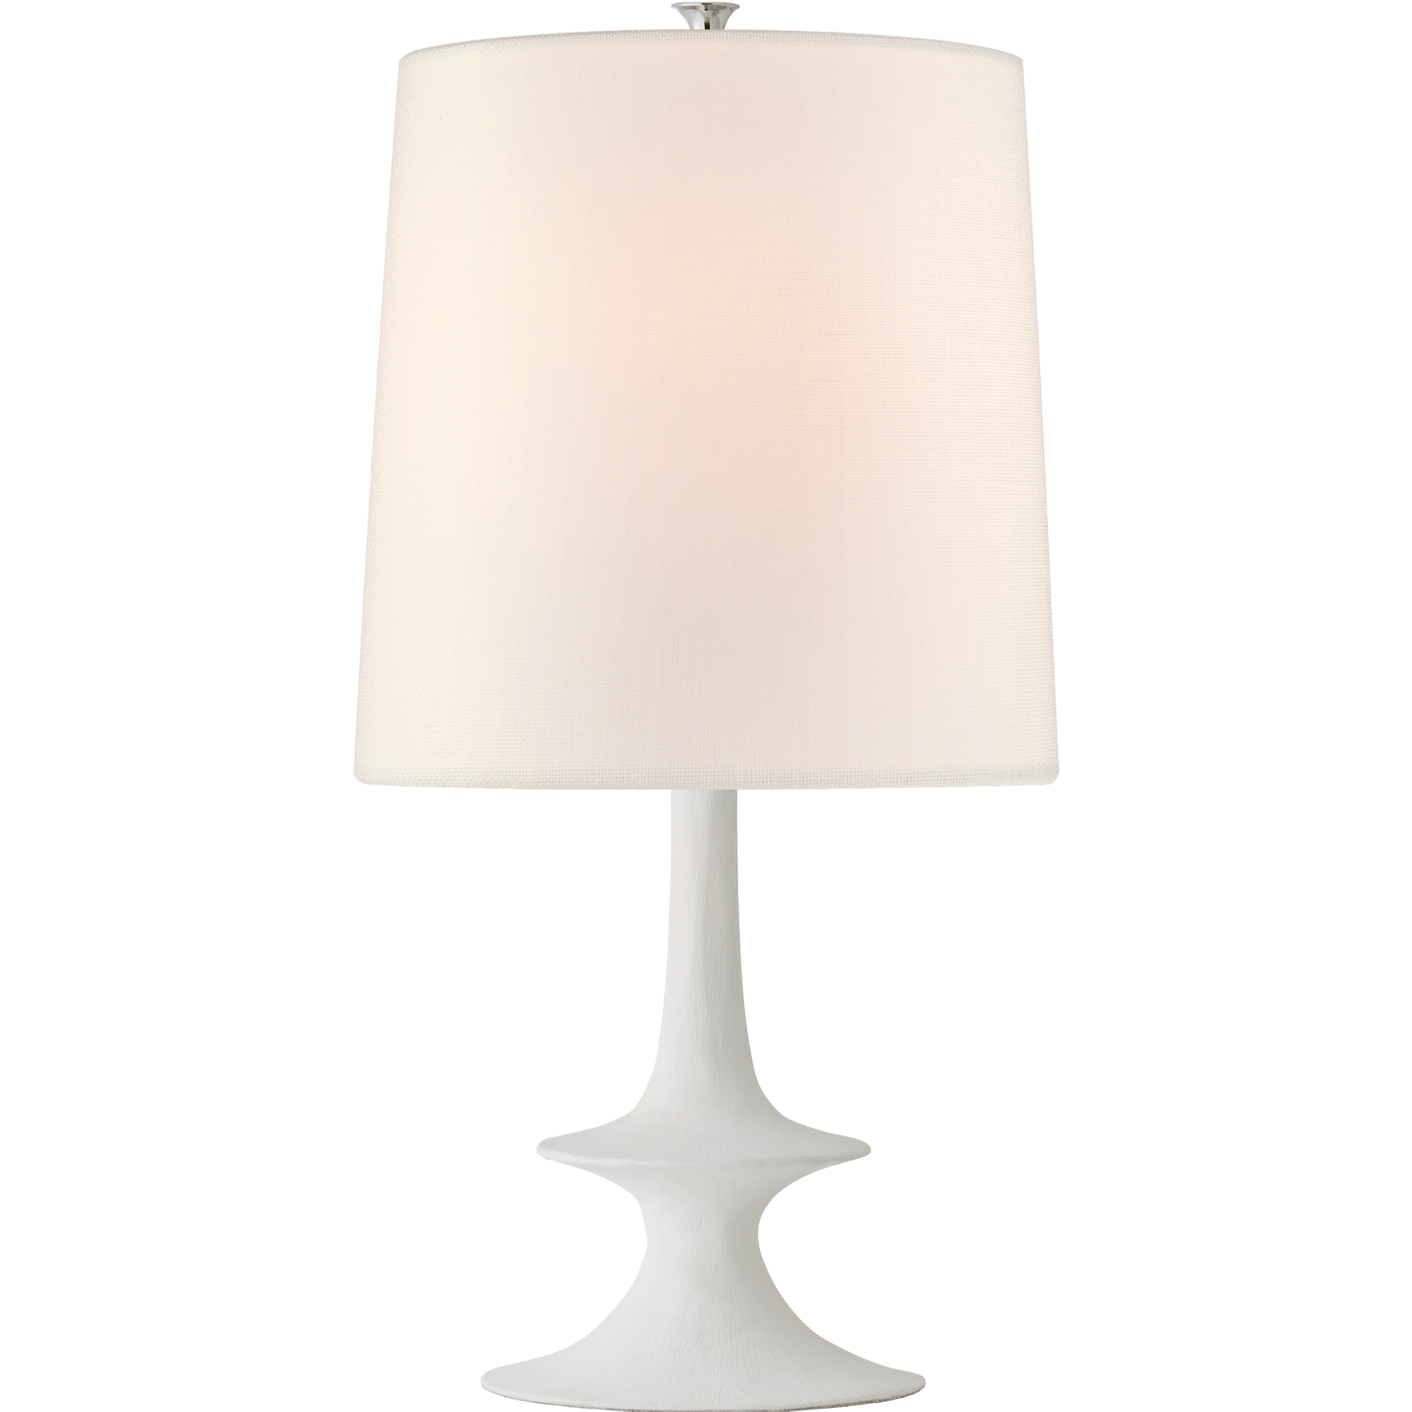 Lakmos Medium Table Lamp